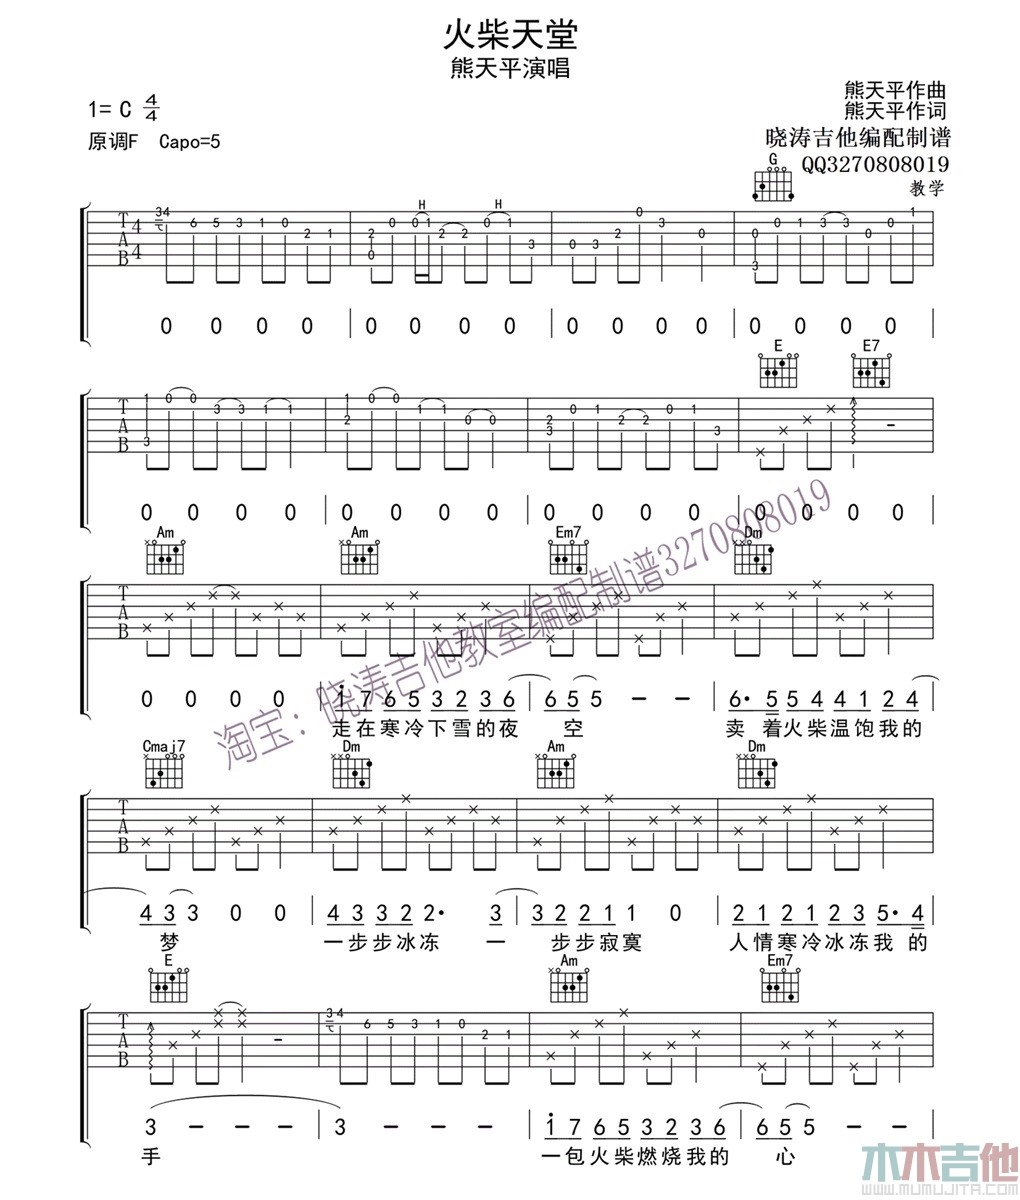 熊天平《火柴天堂》吉他谱-Guitar Music Score